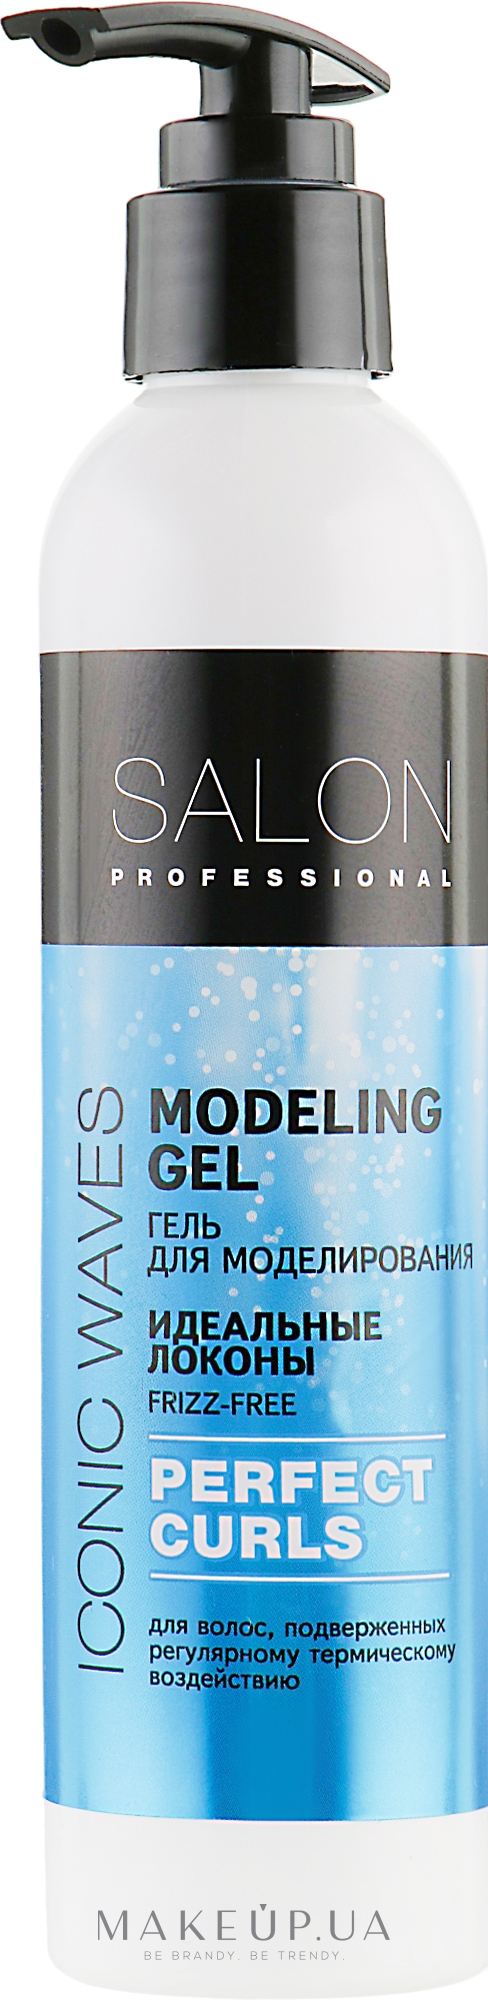 Гель для моделирования локонов "Идеальные локоны" - Salon Professional Modeling Gel Perfect Curls — фото 200ml